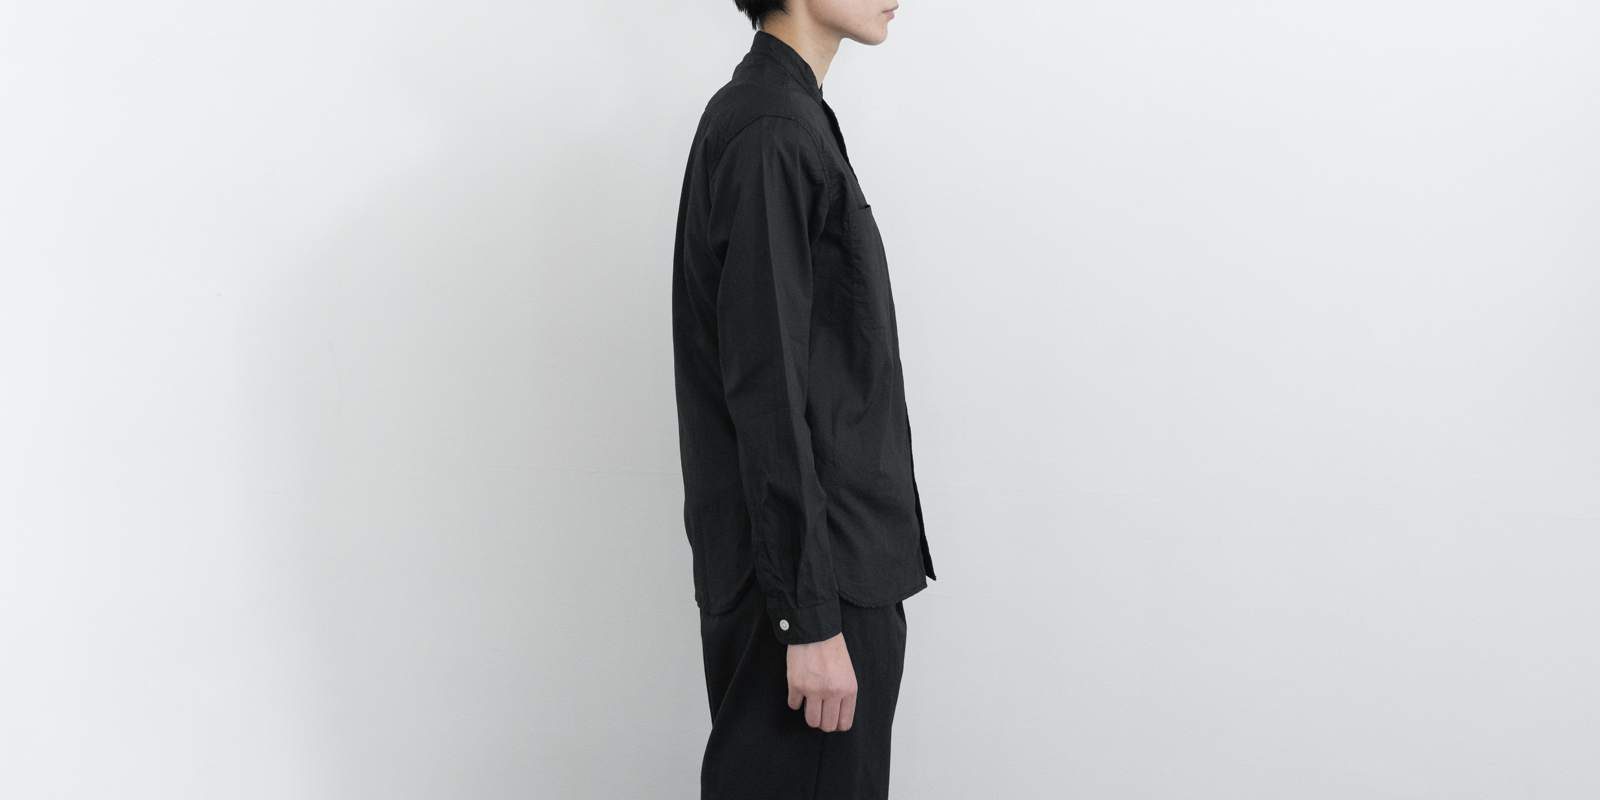 d WEAR スタンドシャツ・ブラック・XL